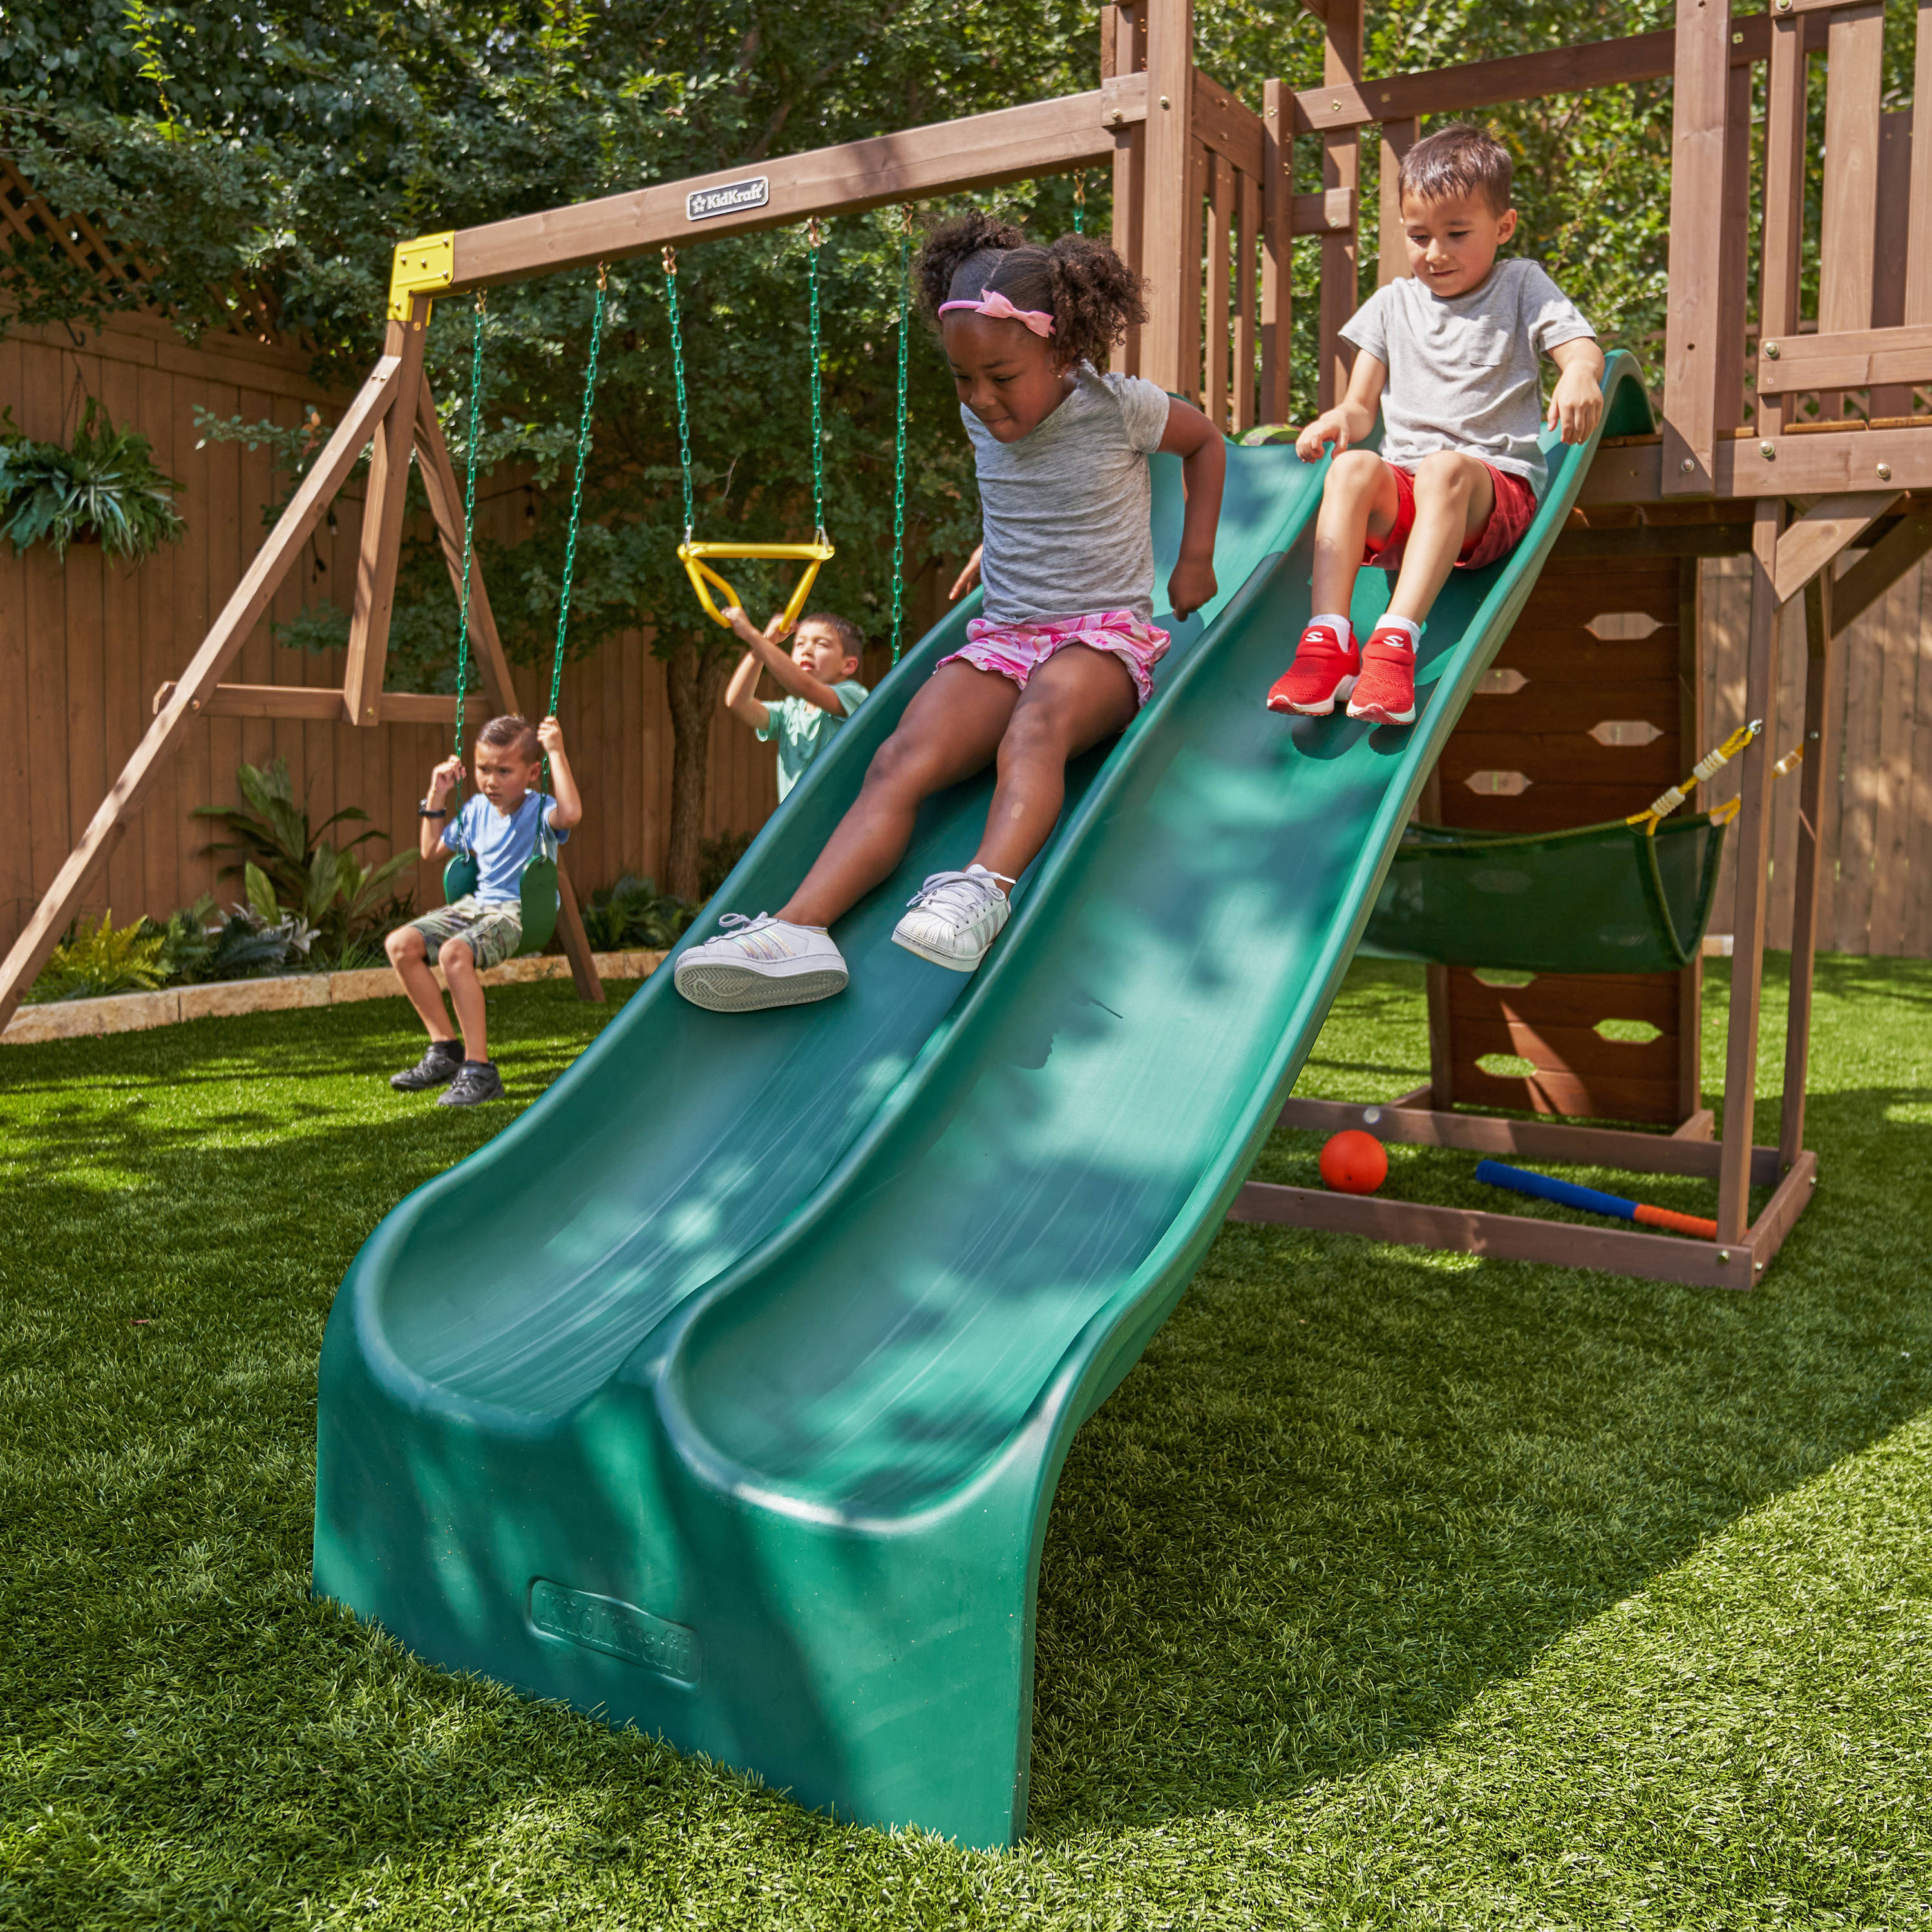 Kids Swing Set Playground Slide Children Play Area Outdoor Garden Toddler Baby 